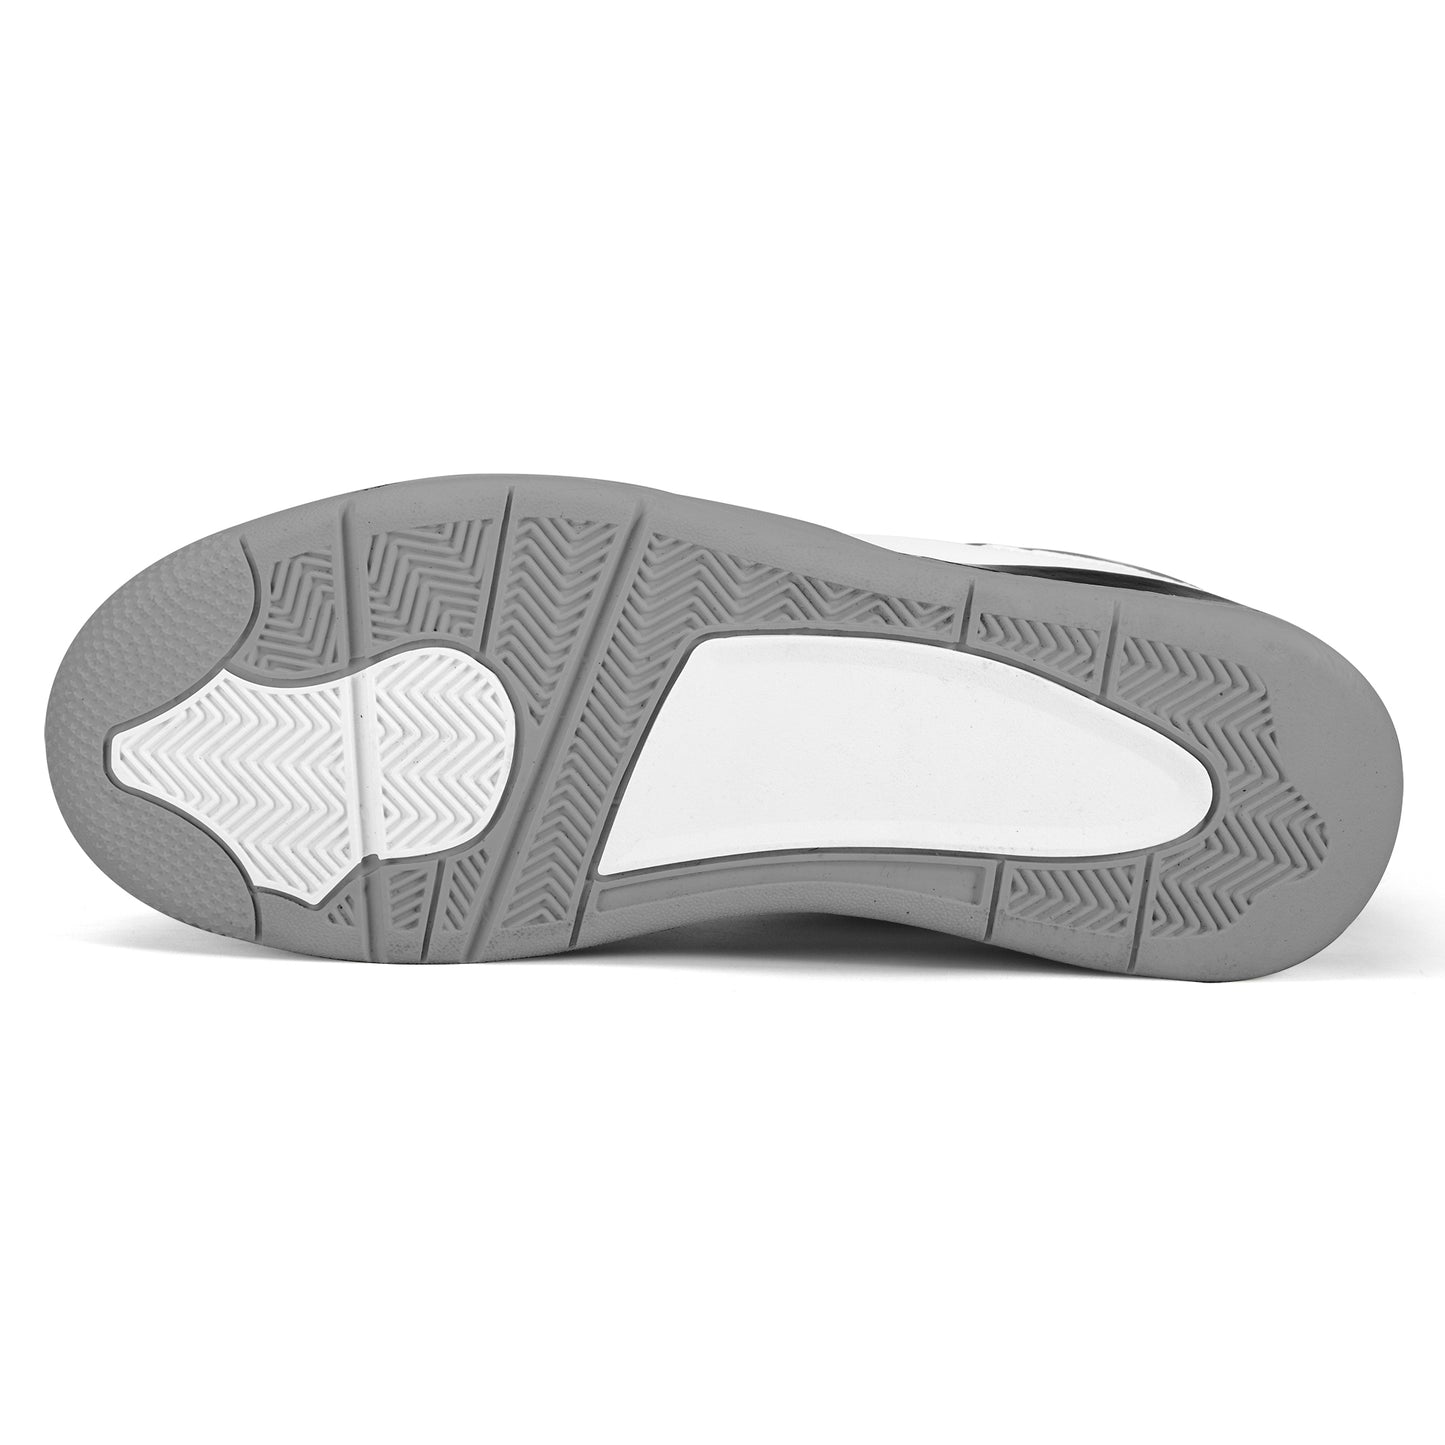 Dark Grey Color Retro Low Top J4 Style Sneakers